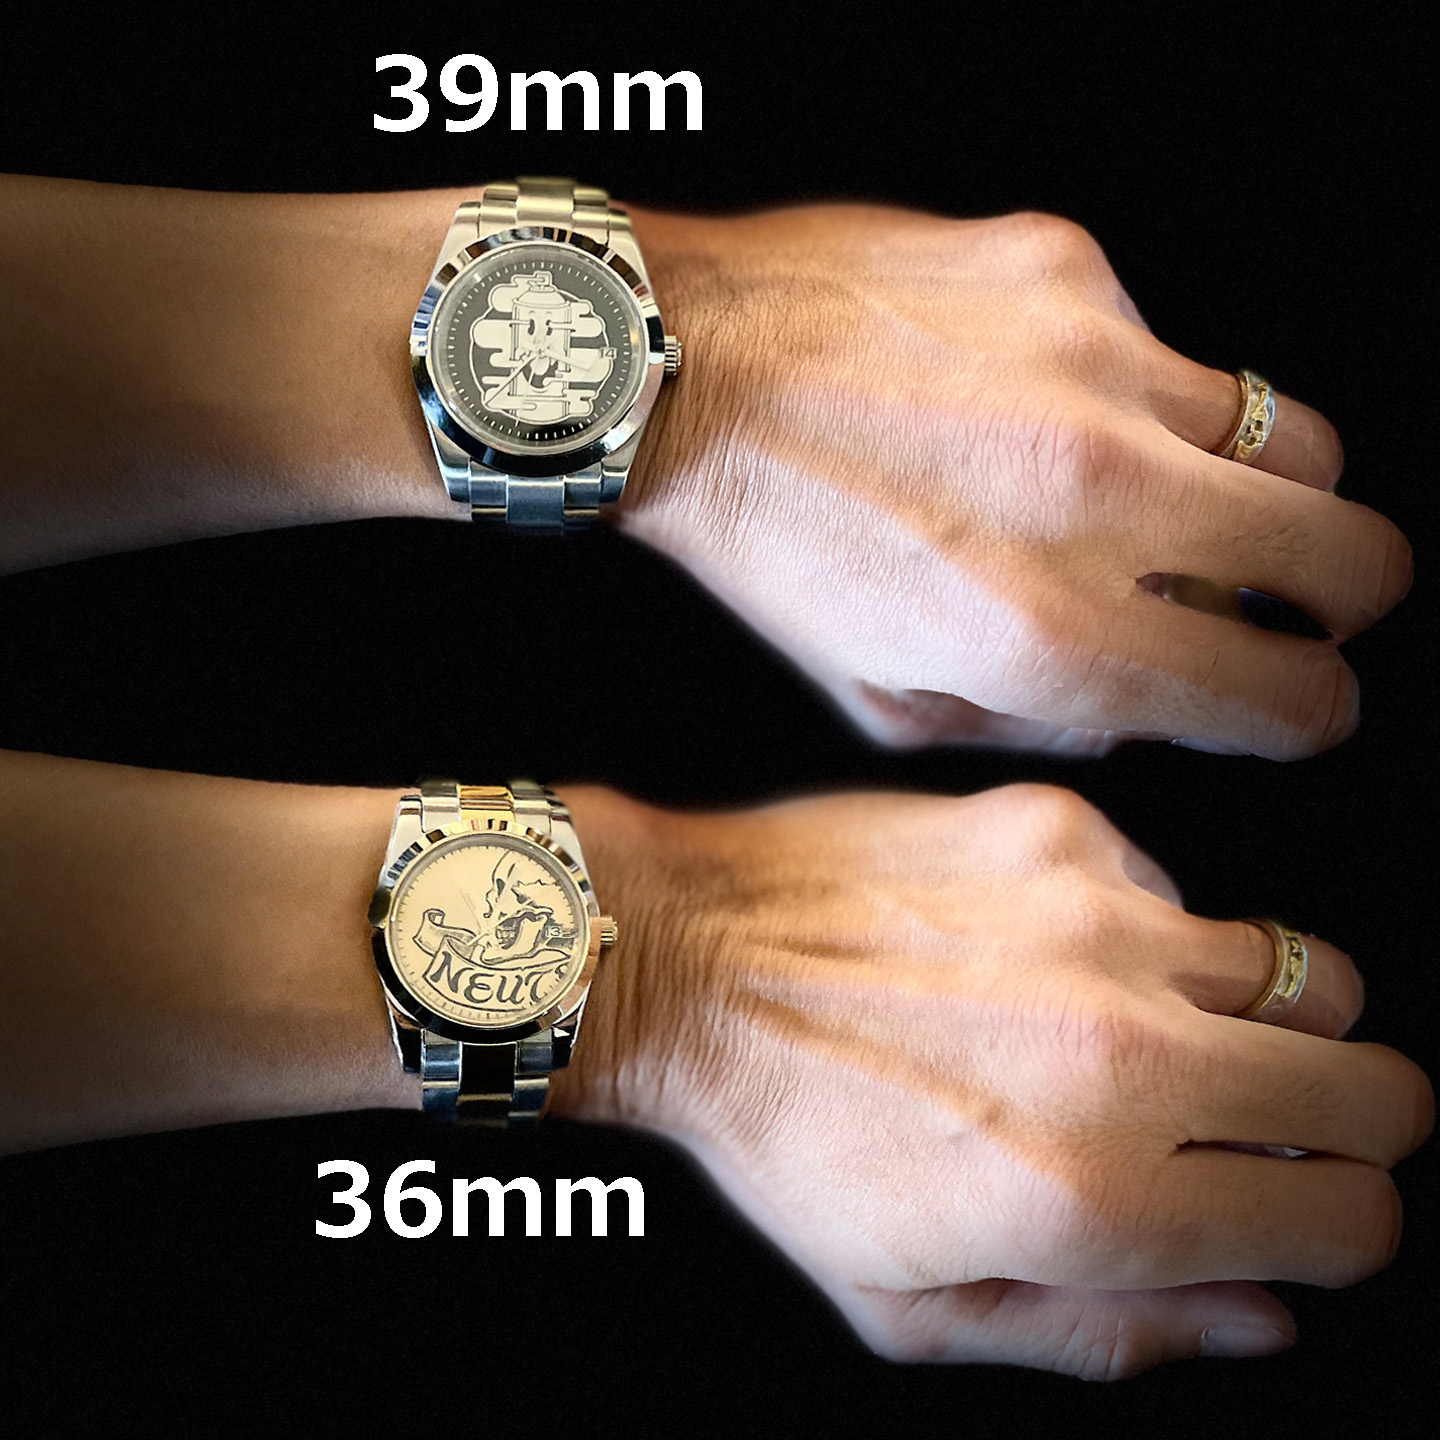 ニュートラル 腕時計 ガクレ neutral watch gakure